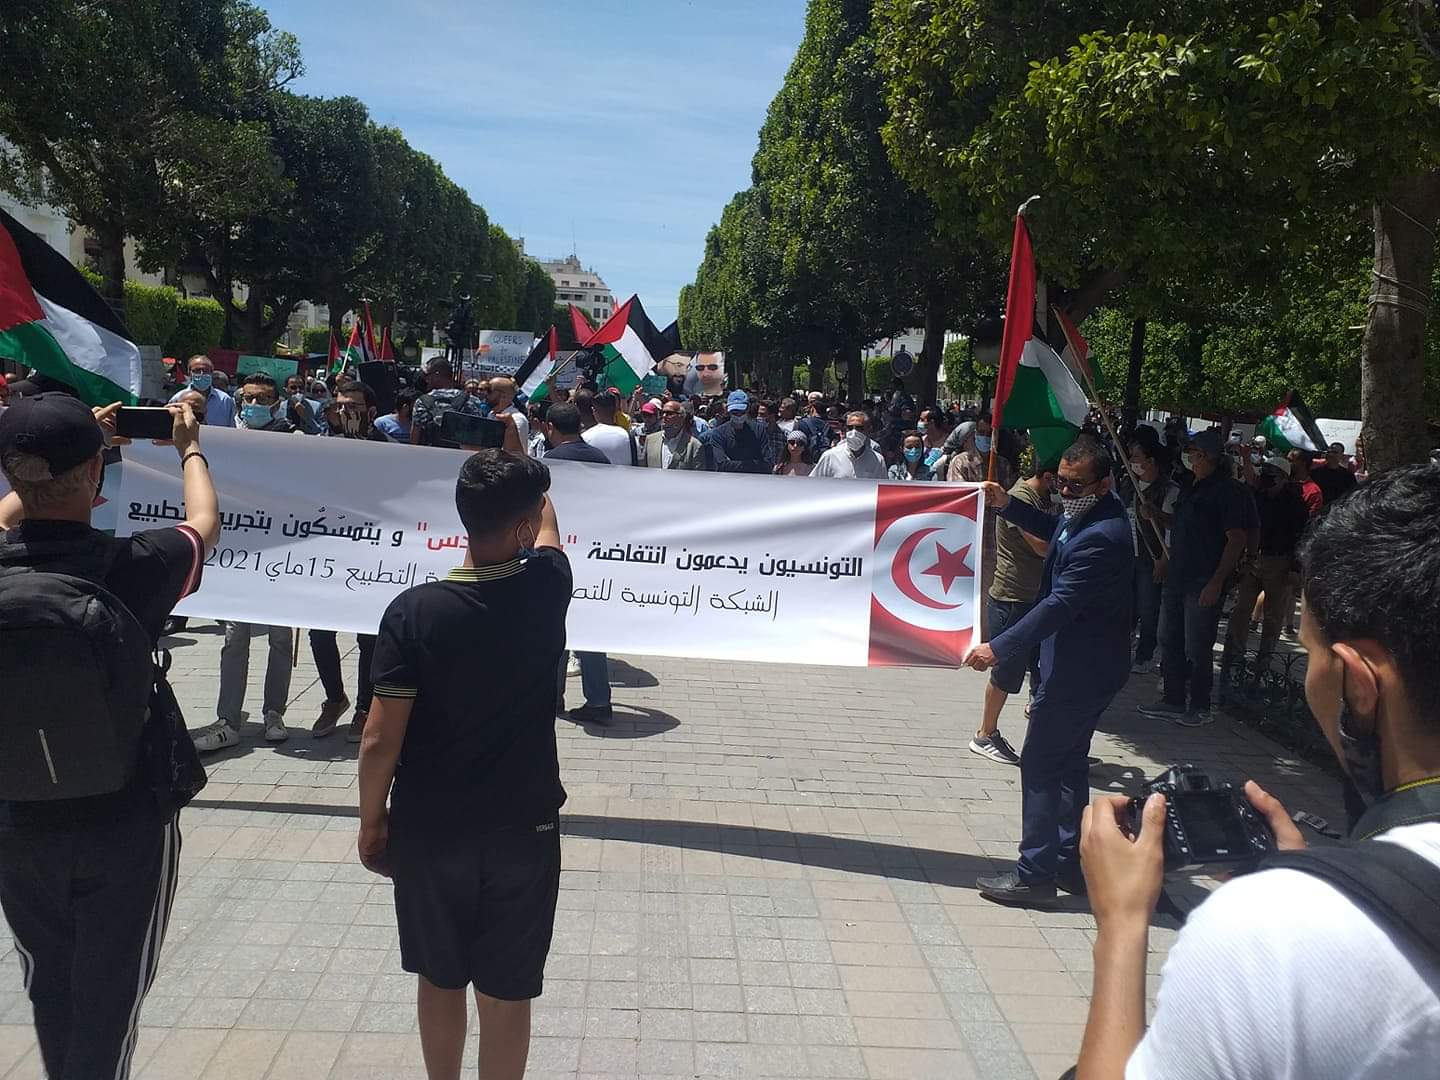 تونس: حراك سياسي ومدني لدعم المقاومة الفلسطينية والمطالبة بتجريم التطبيع